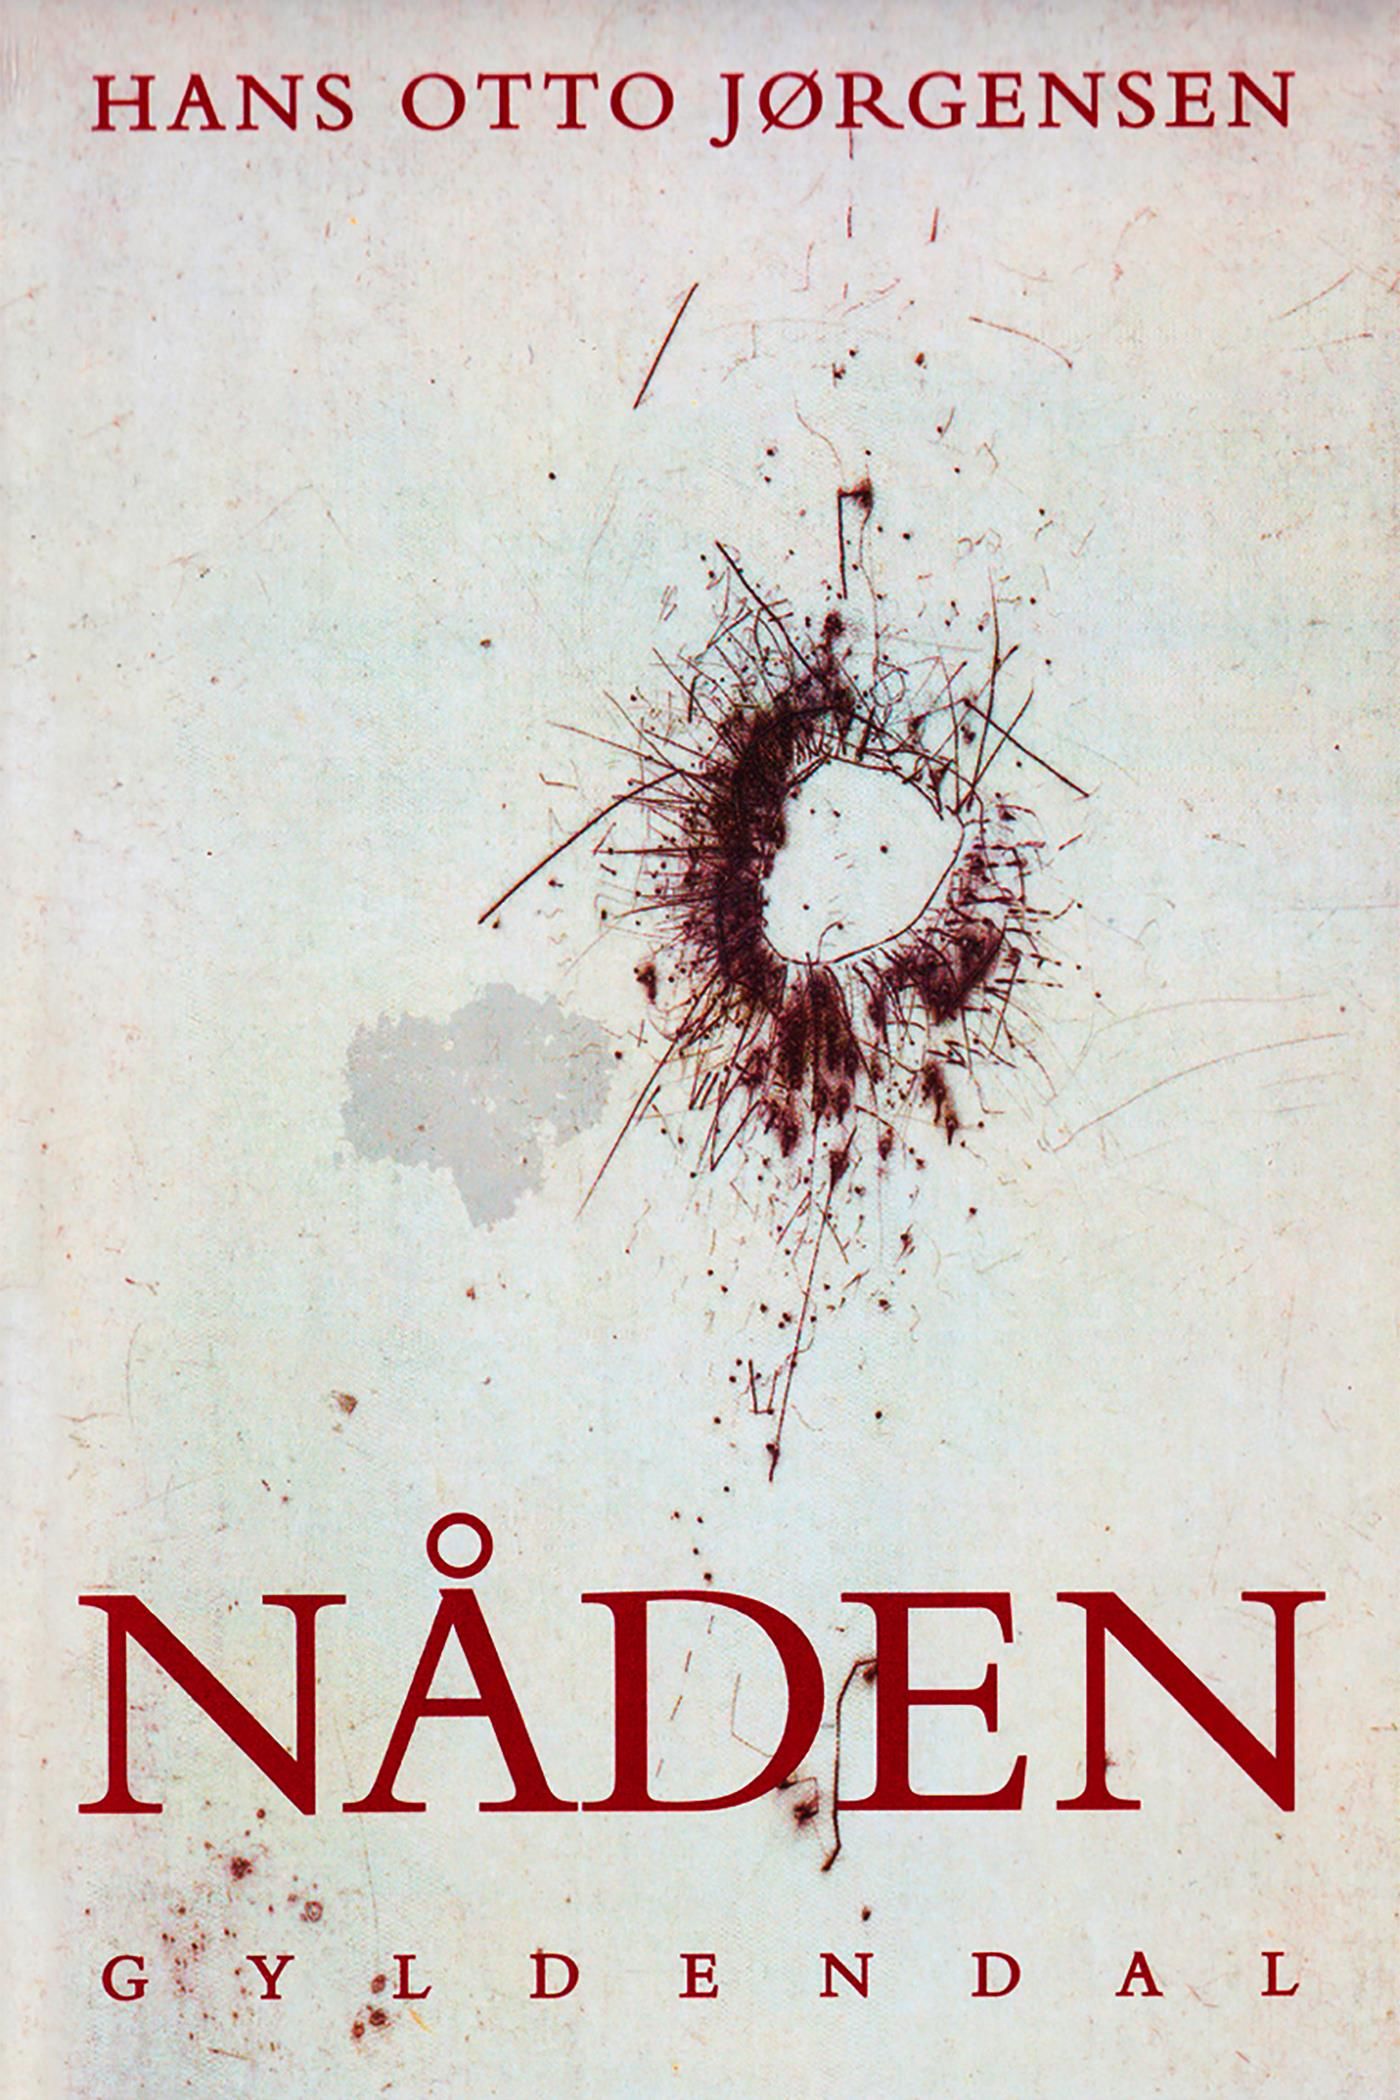 Nåden, eBook by Hans Otto Jørgensen